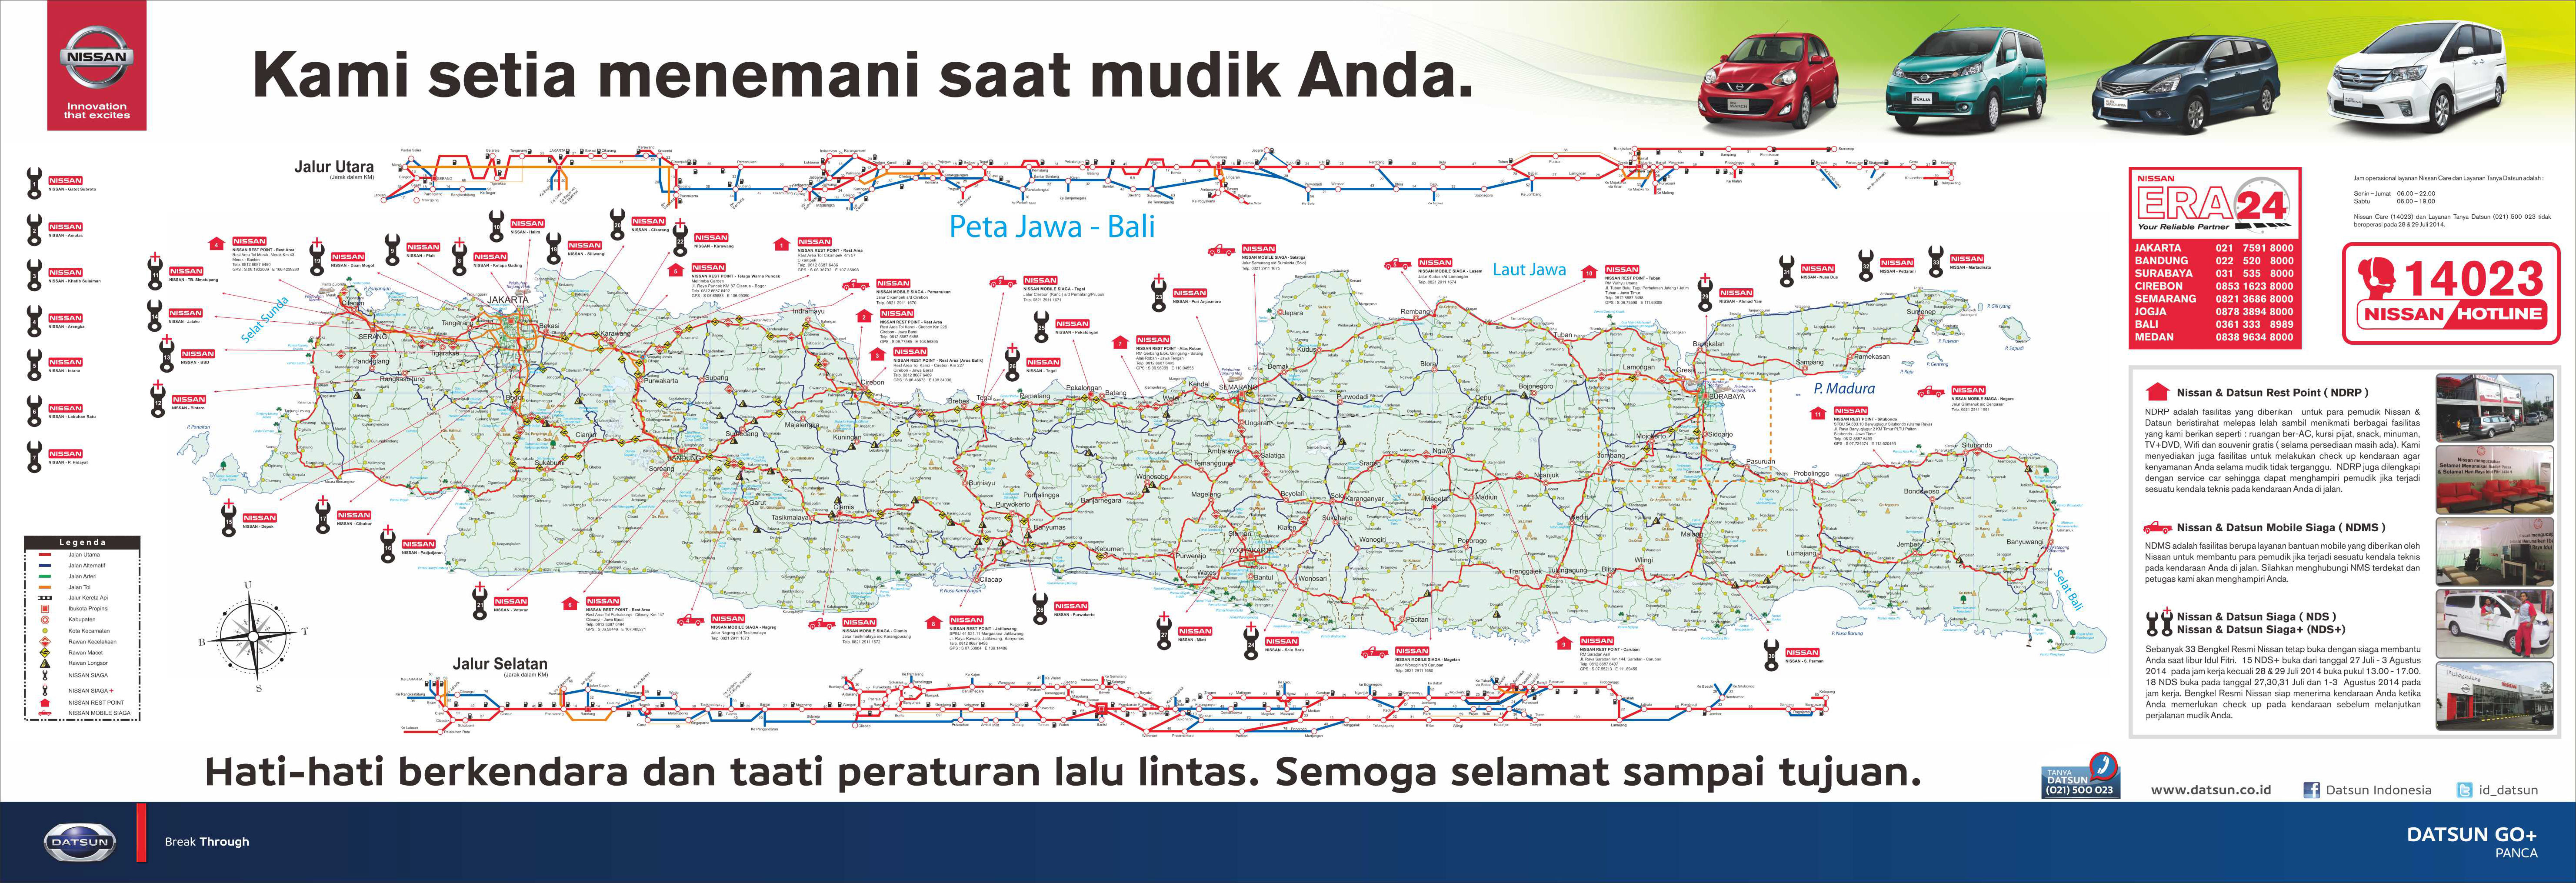 Event, Peta Mudik dan posko mudik bengkel resmi 24 jam Nissan Indonesia 2014: Nissan Bareng Datsun Buka Posko dan Bengkel Resmi di Sepanjang Jalur Mudik